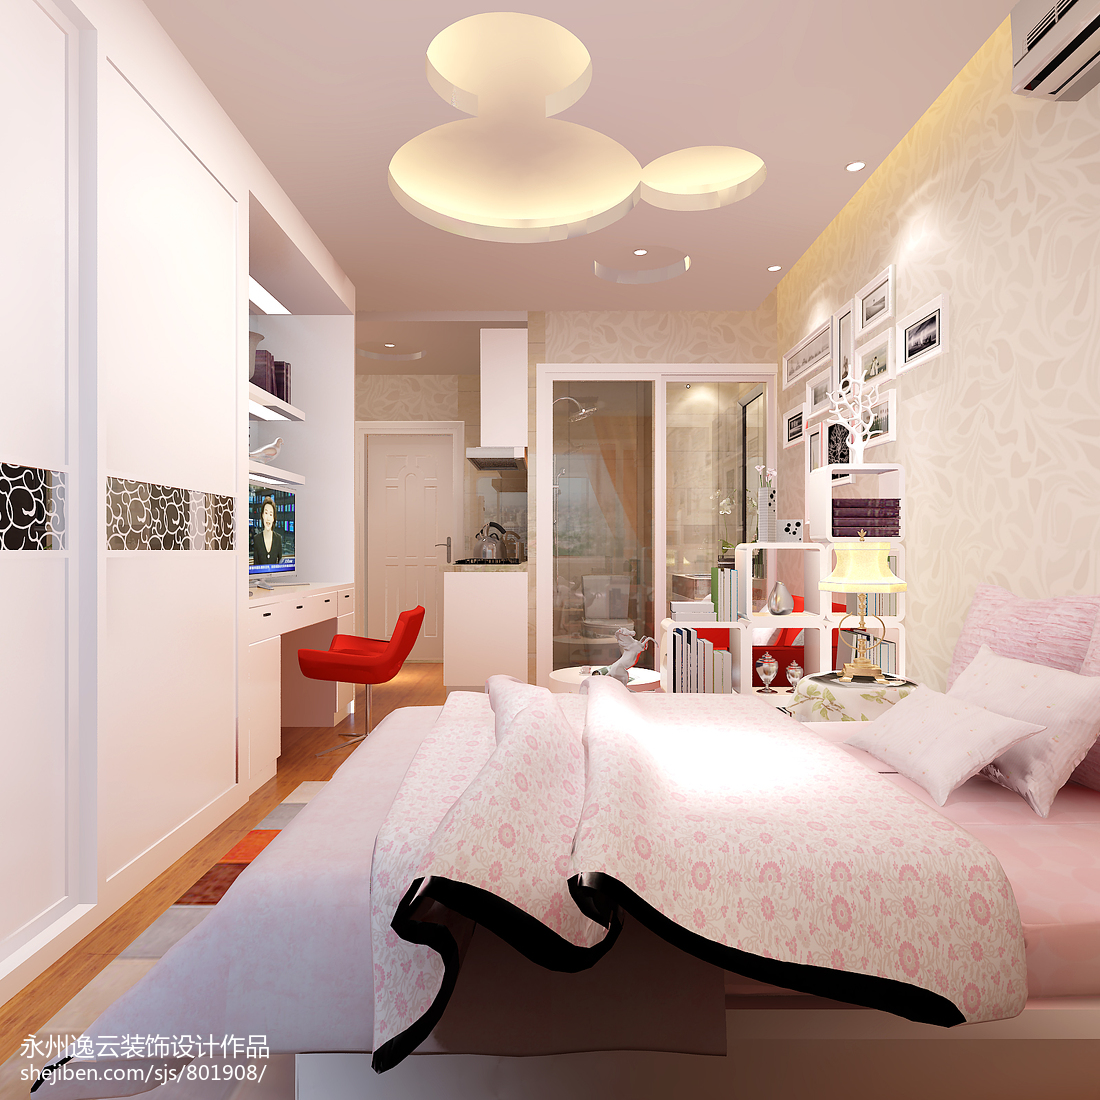 现代时尚个性单身公寓室内设计效果图– 设计